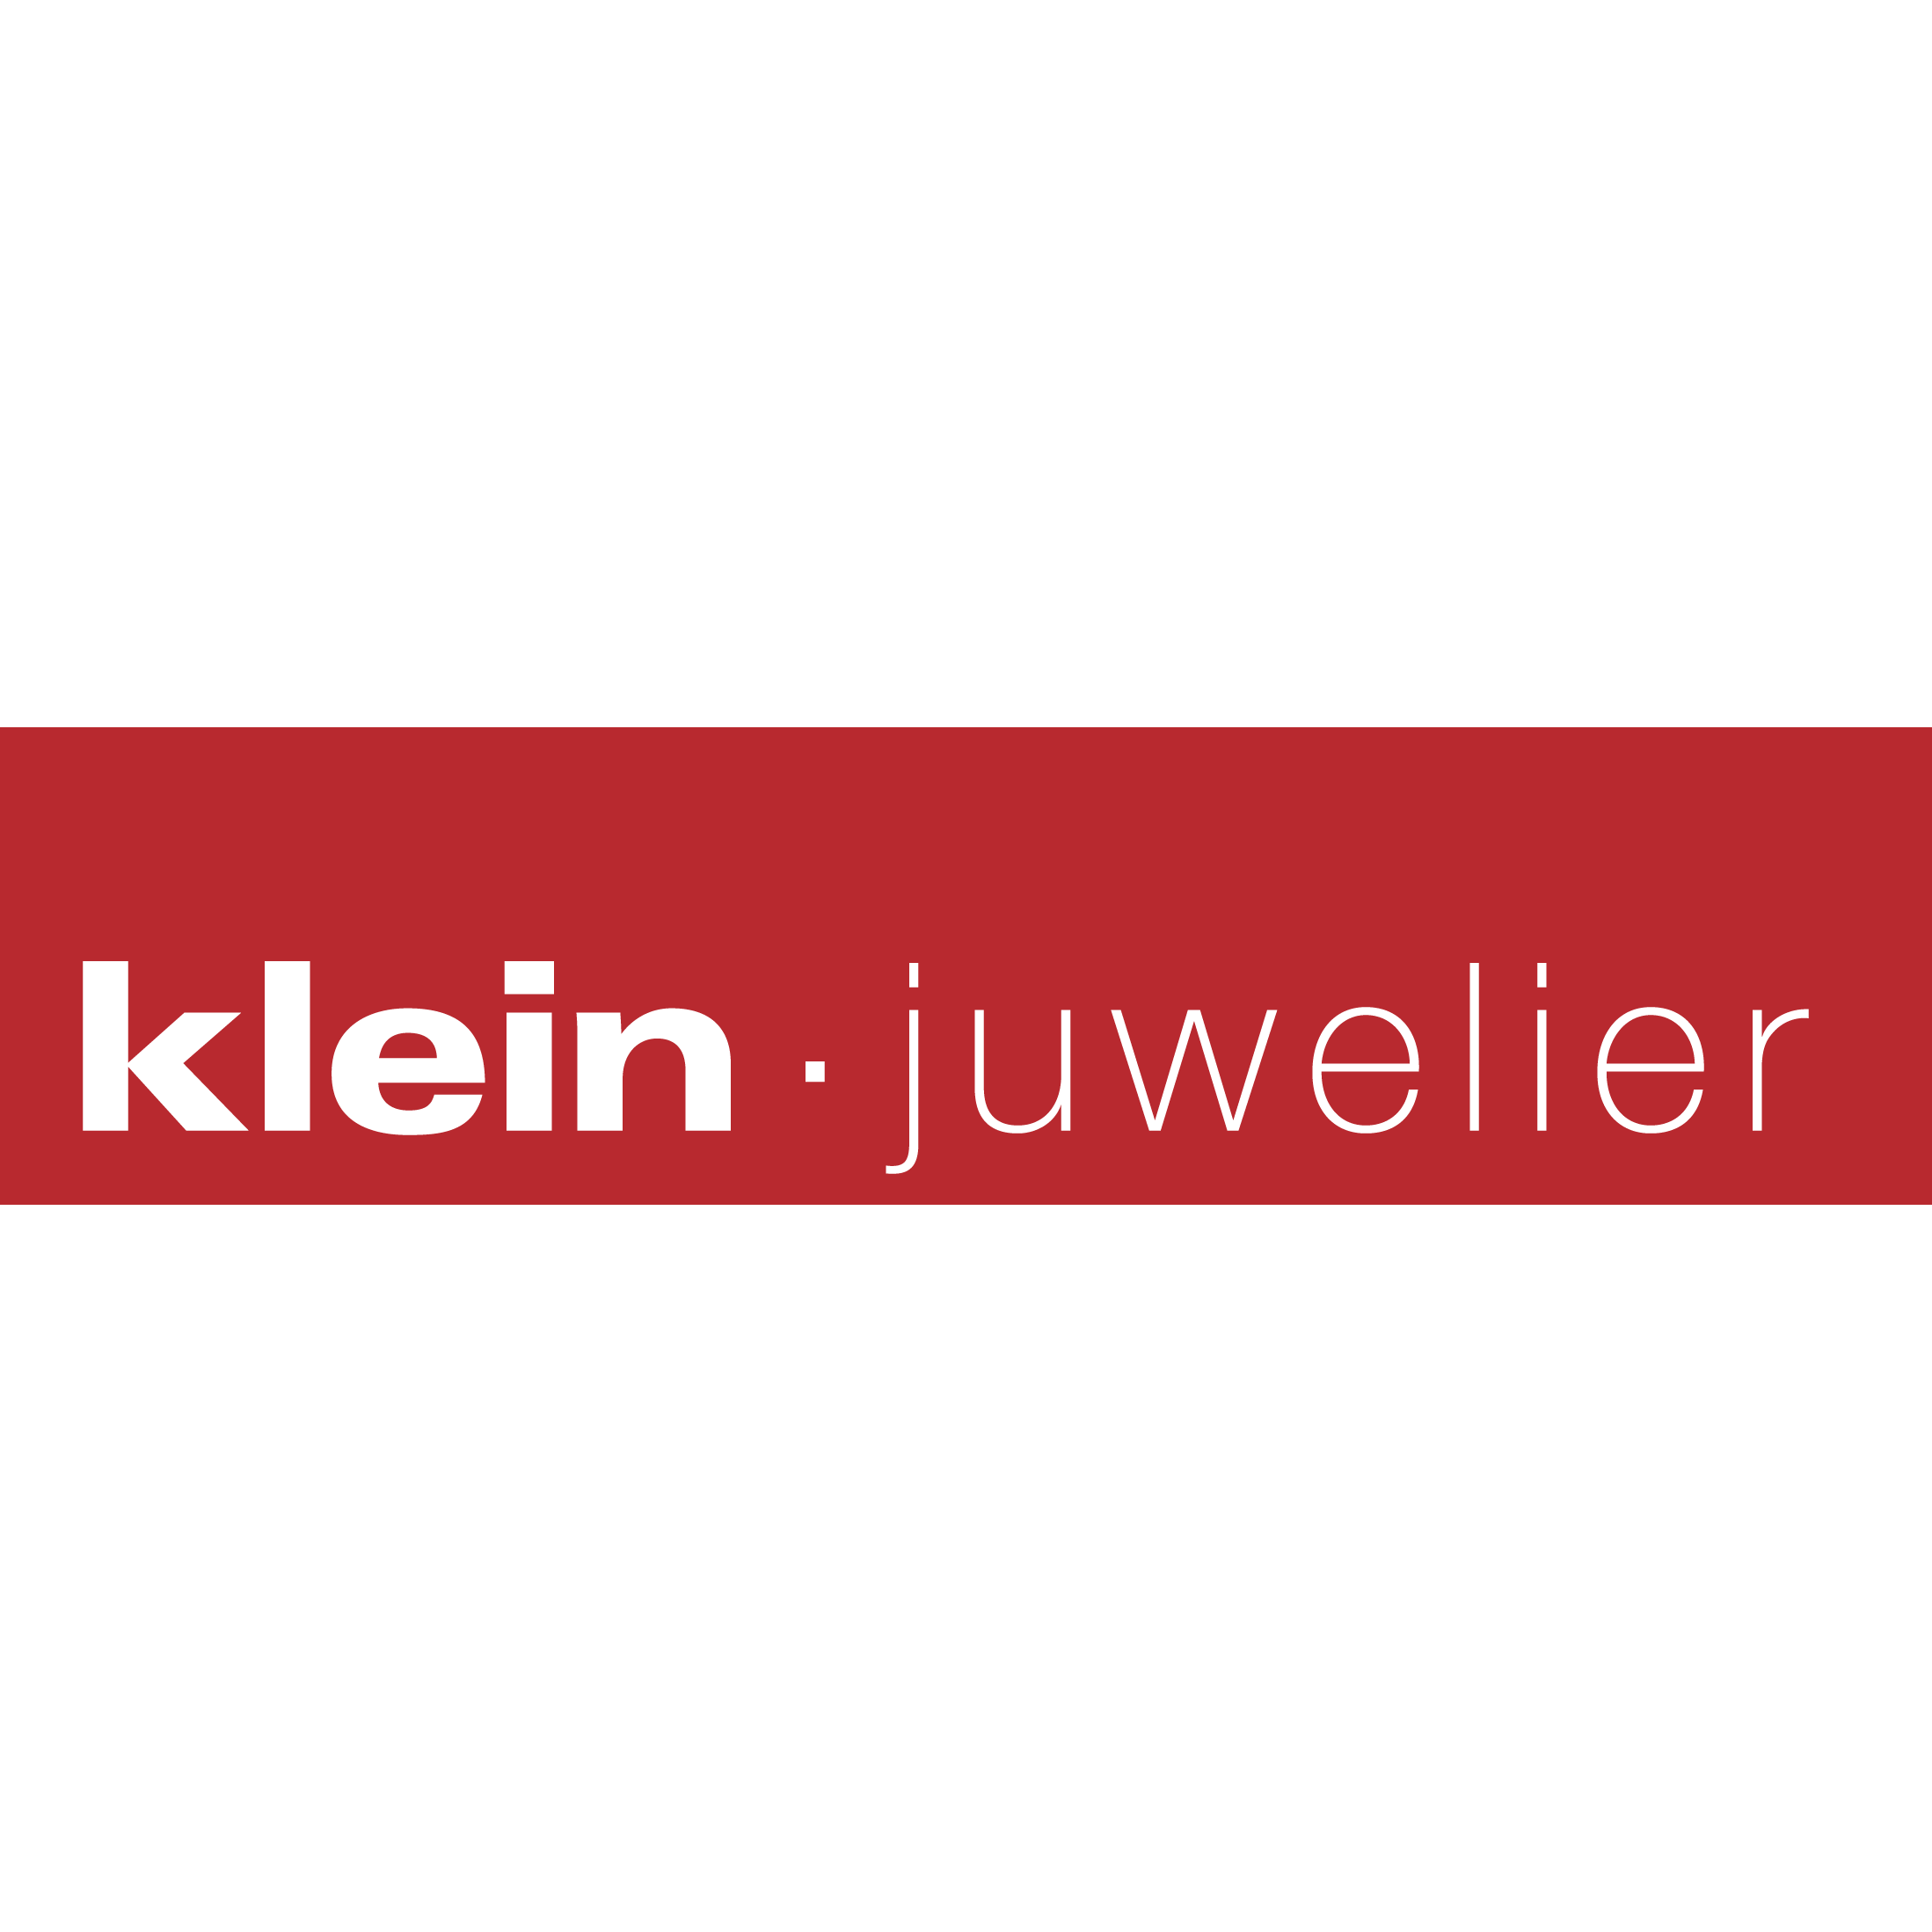 Juwelier Klein